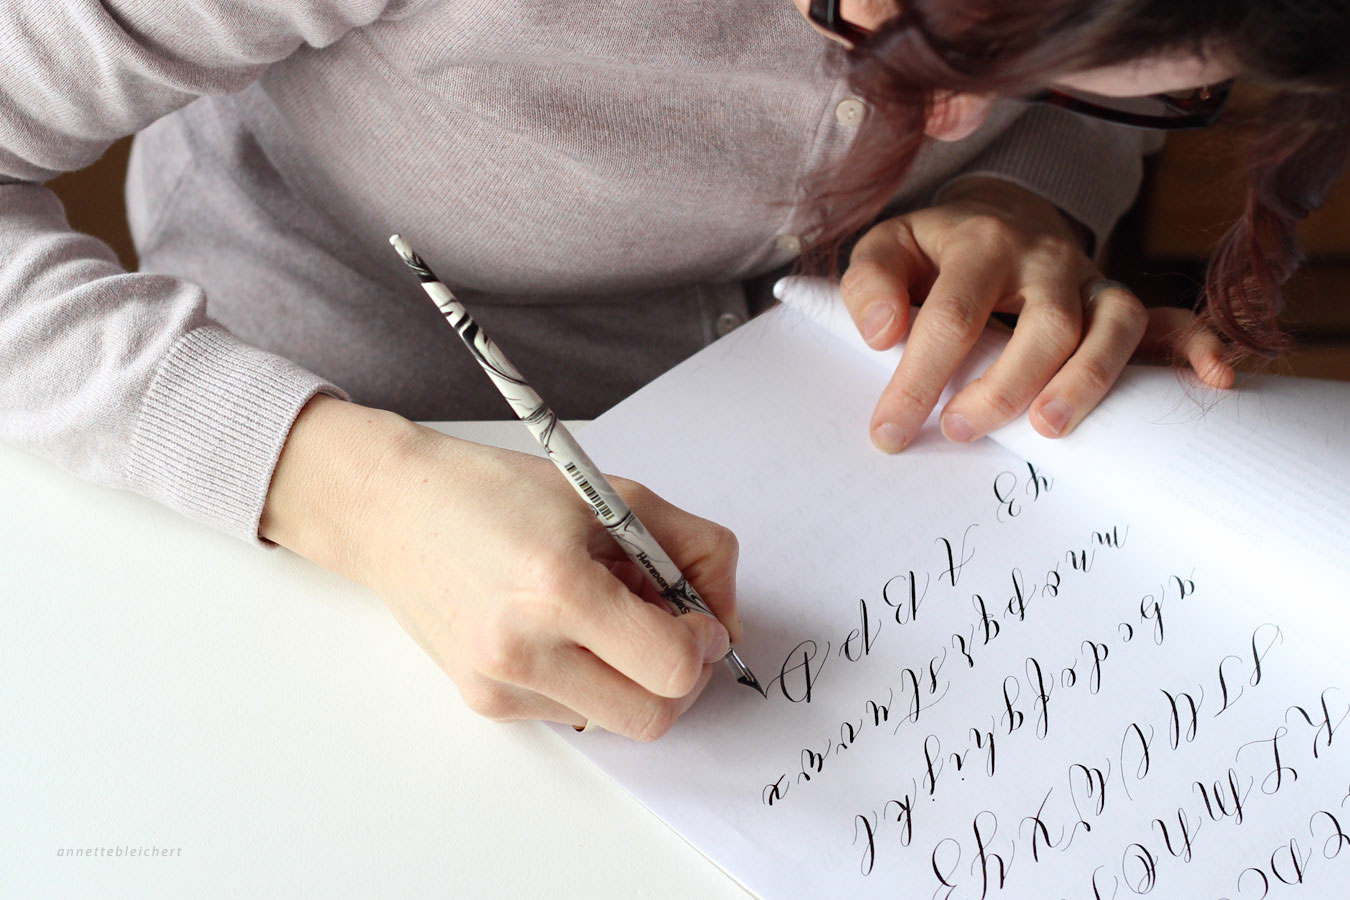 Moderne Kalligrafie Workshop